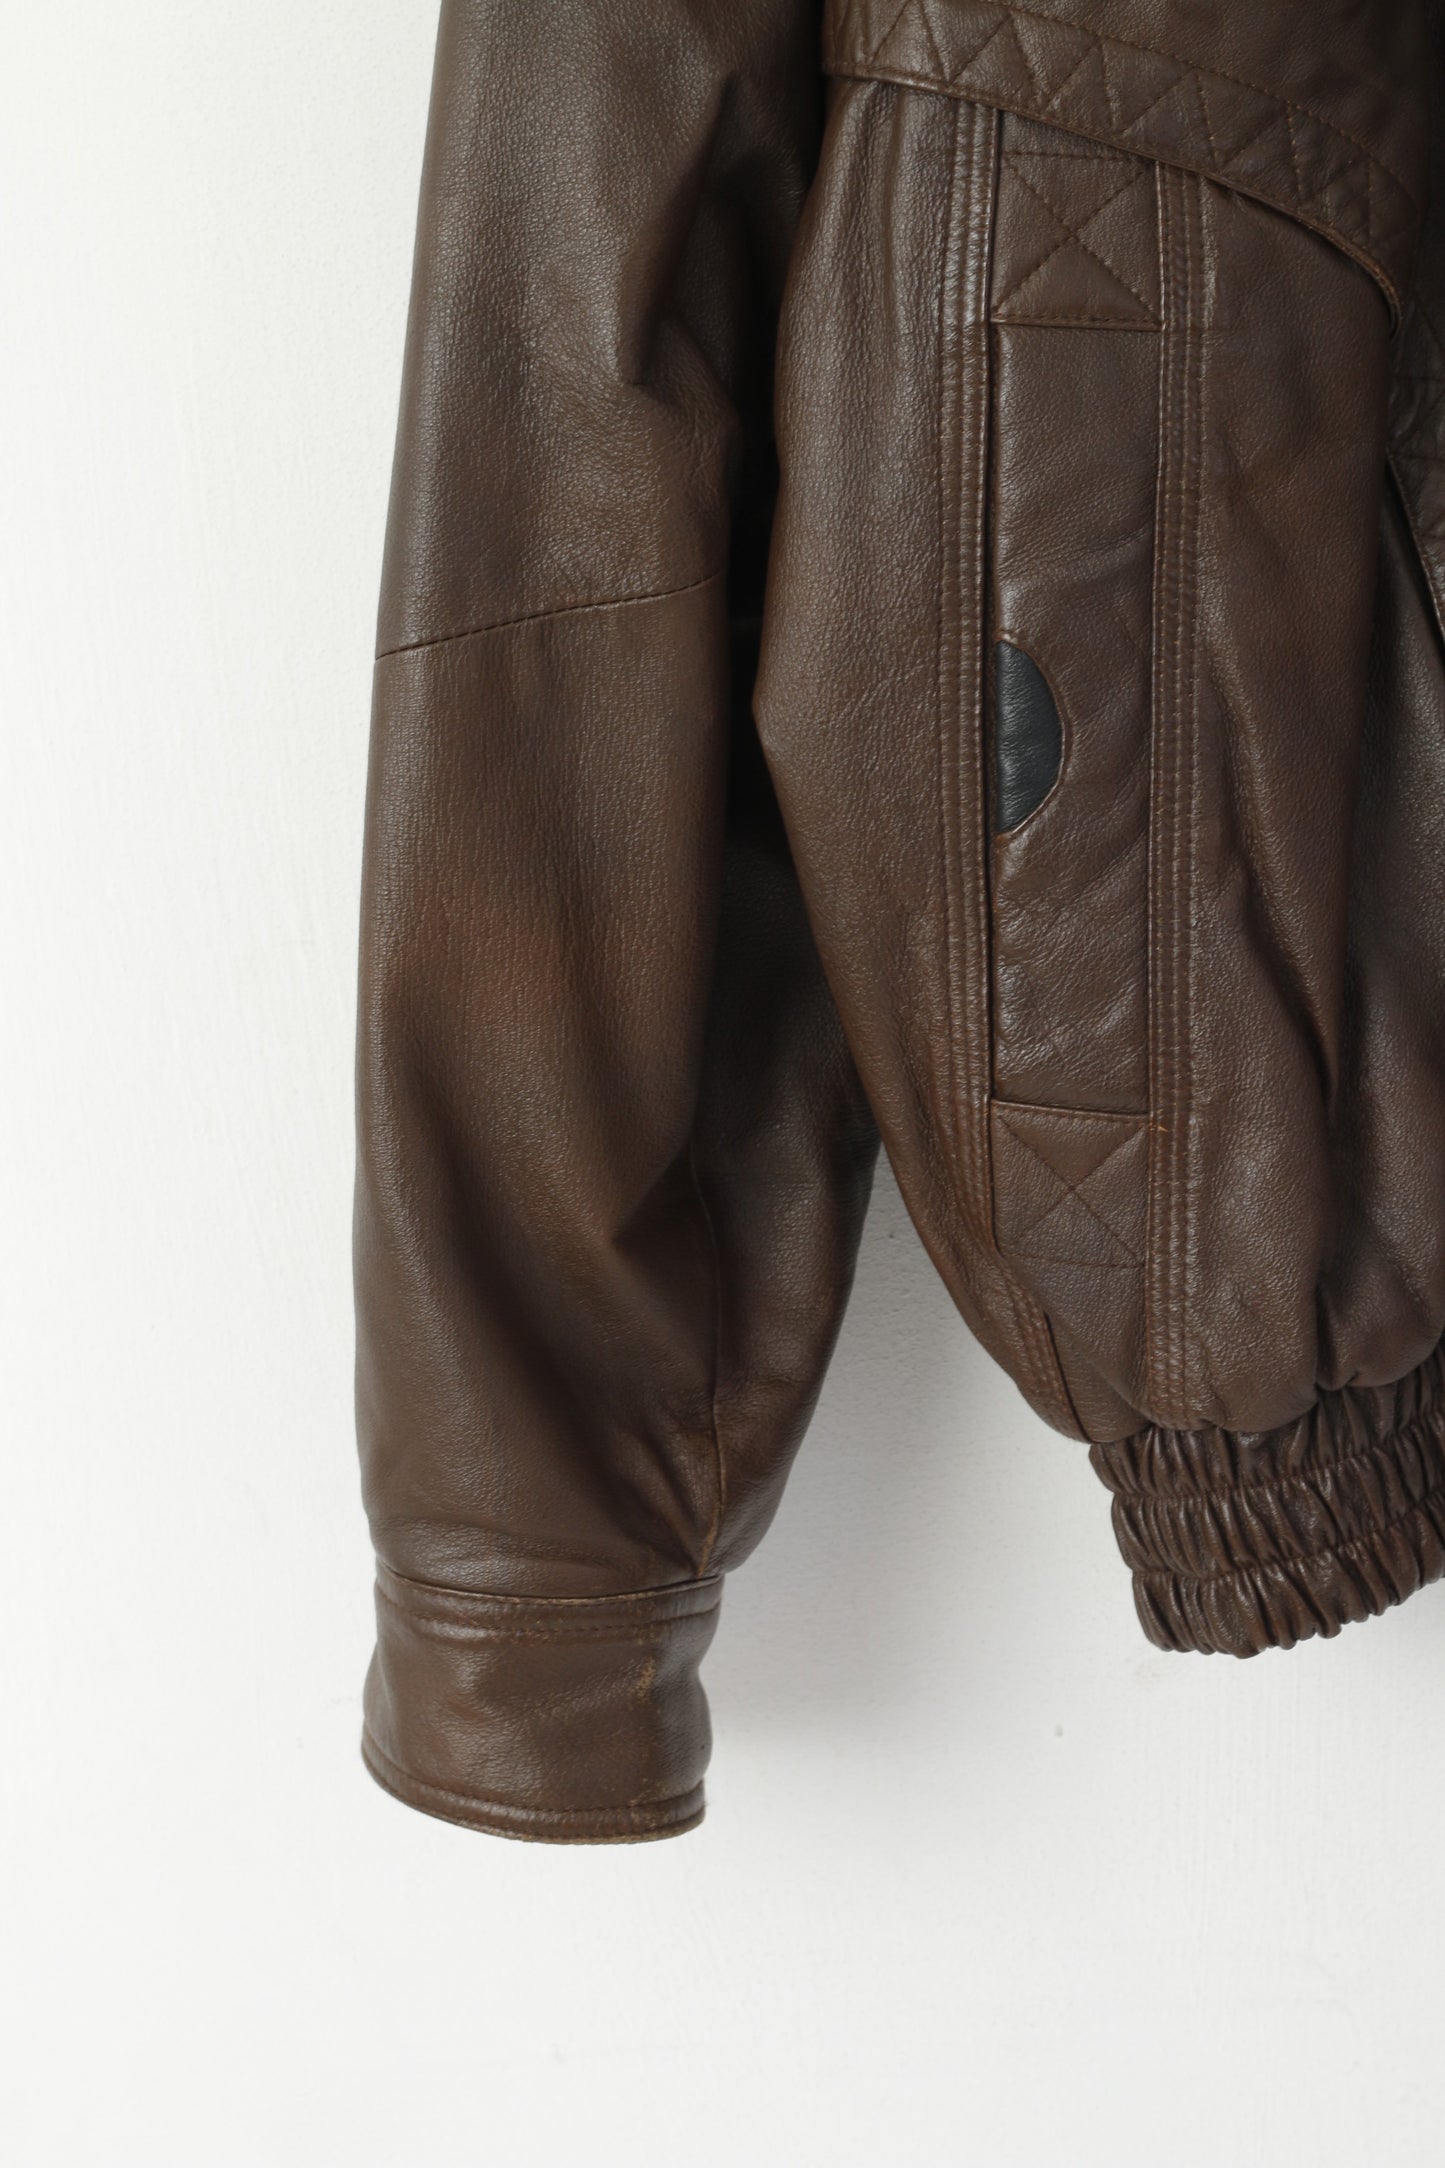 Rising Sun Men 52 L Bomber Jacket Brown Vintage Leather Pilot Removable Sleeve Biker Top